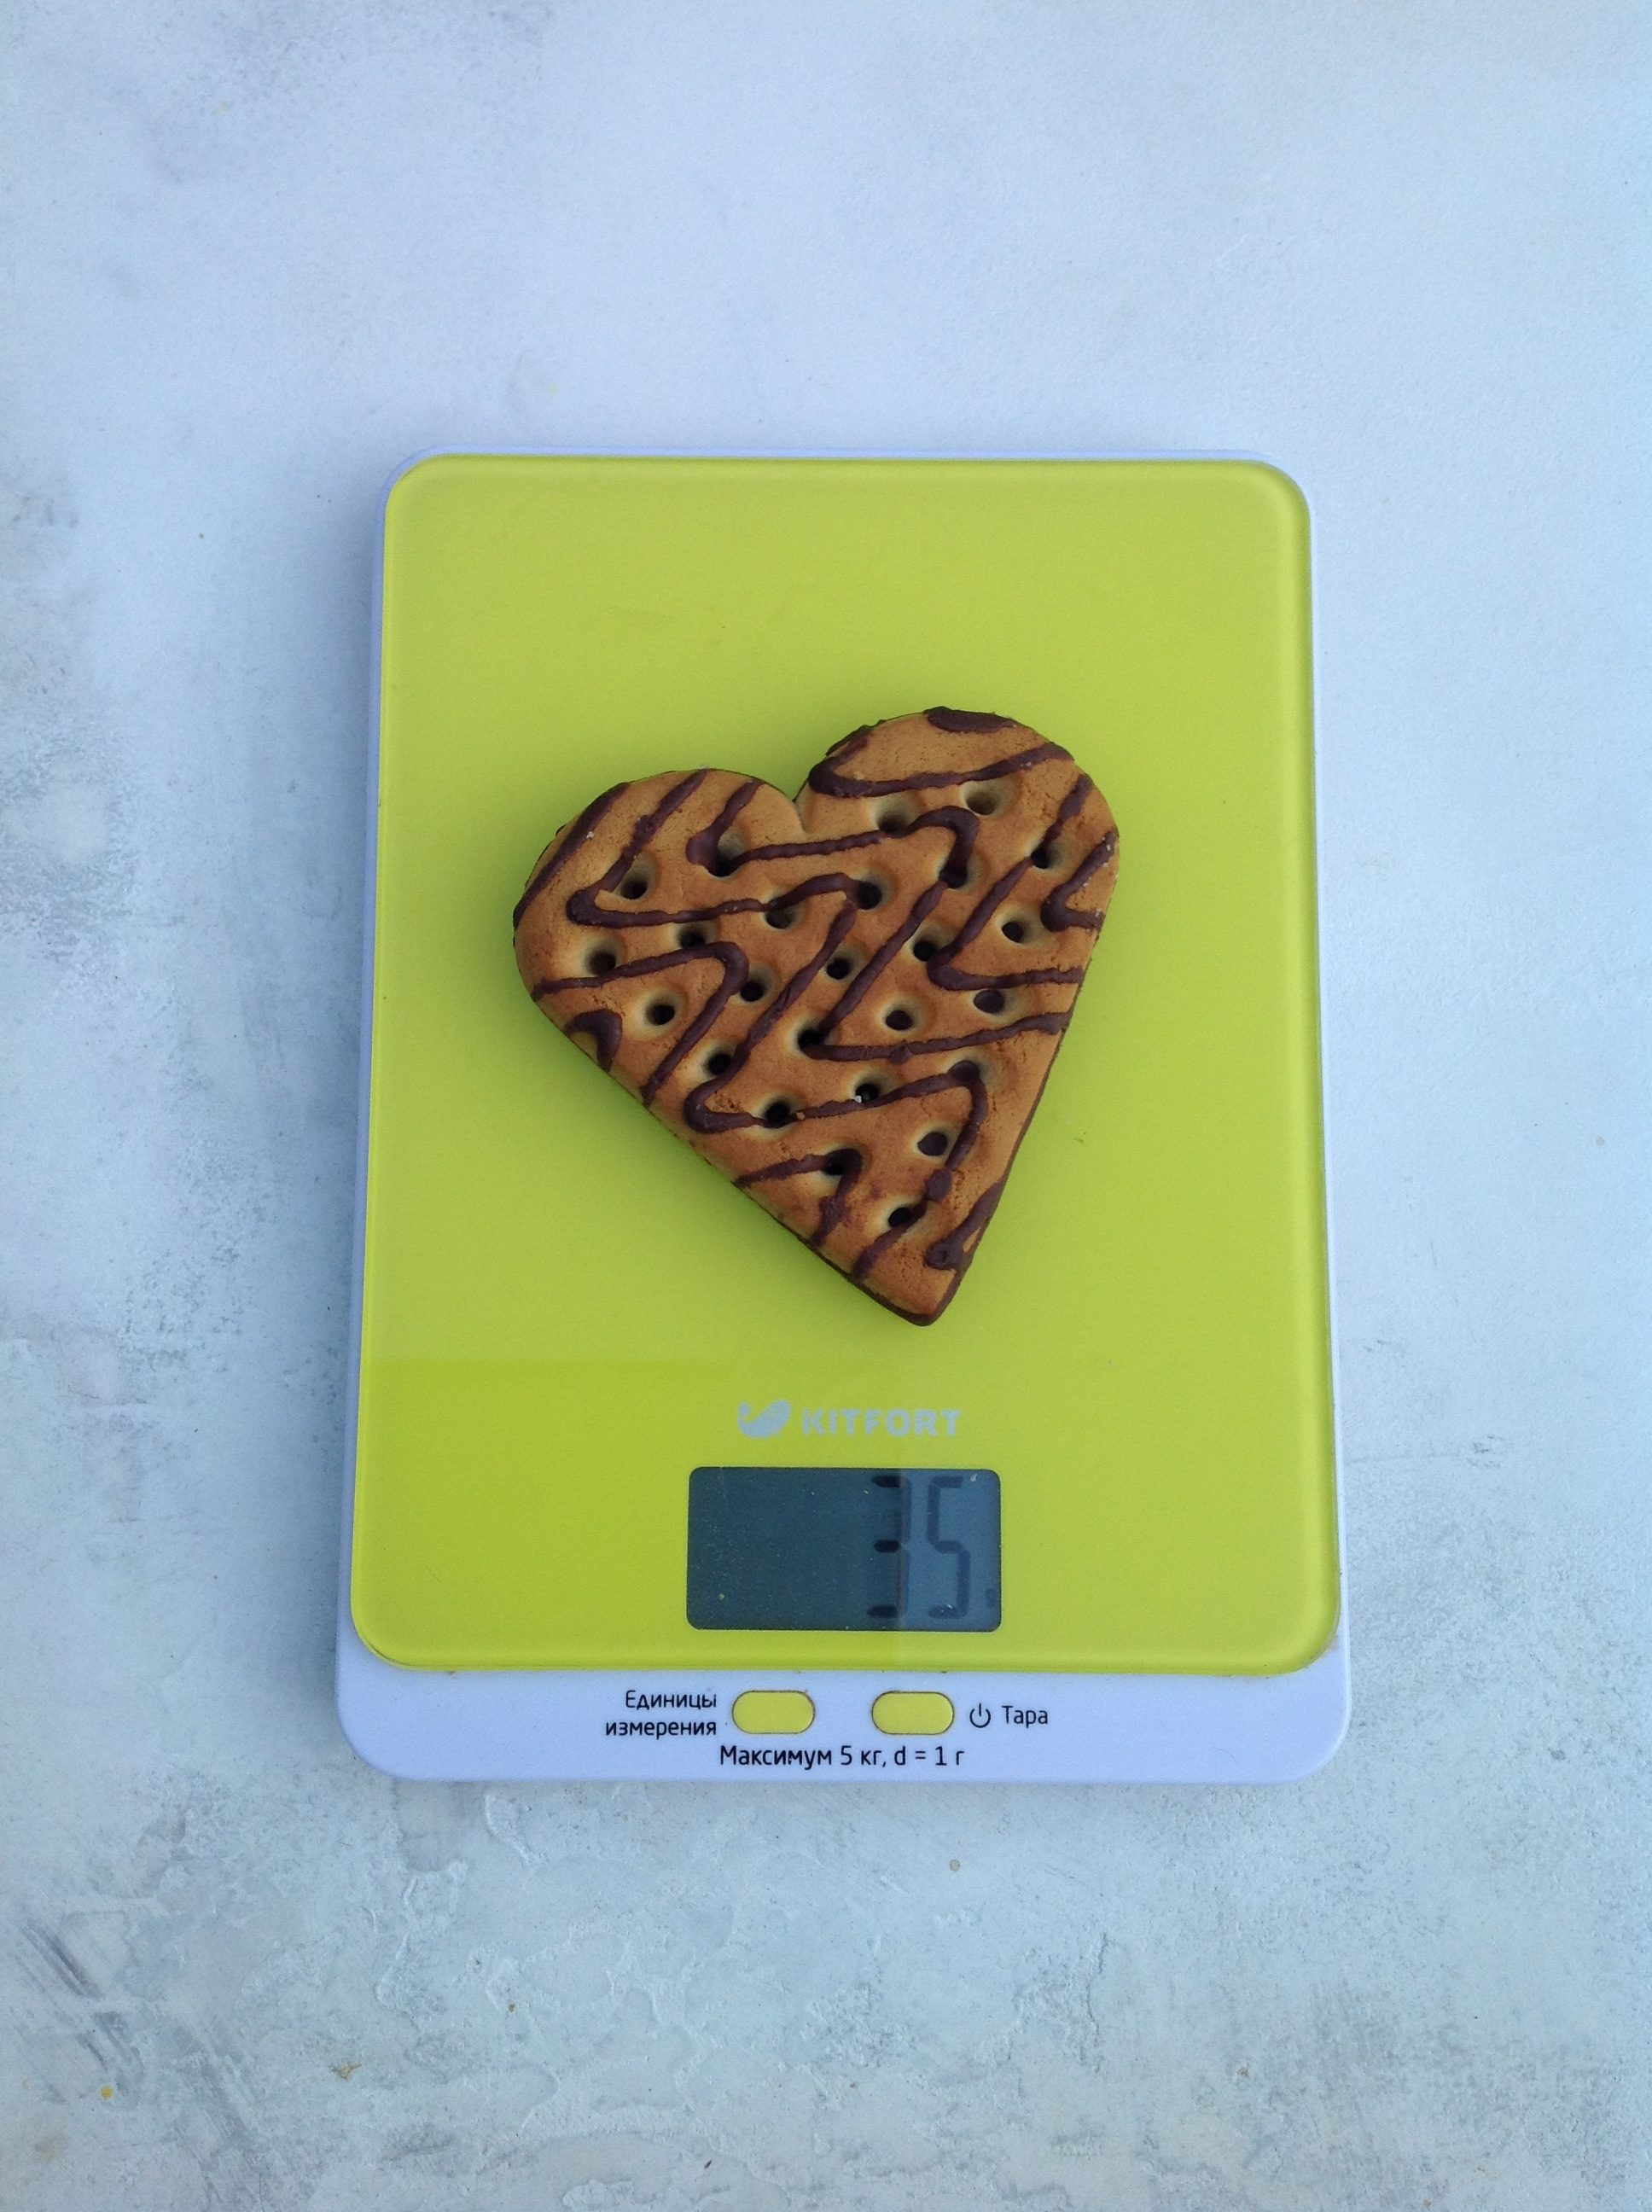 Berapa berat biskuit jantung berlapis cokelat?